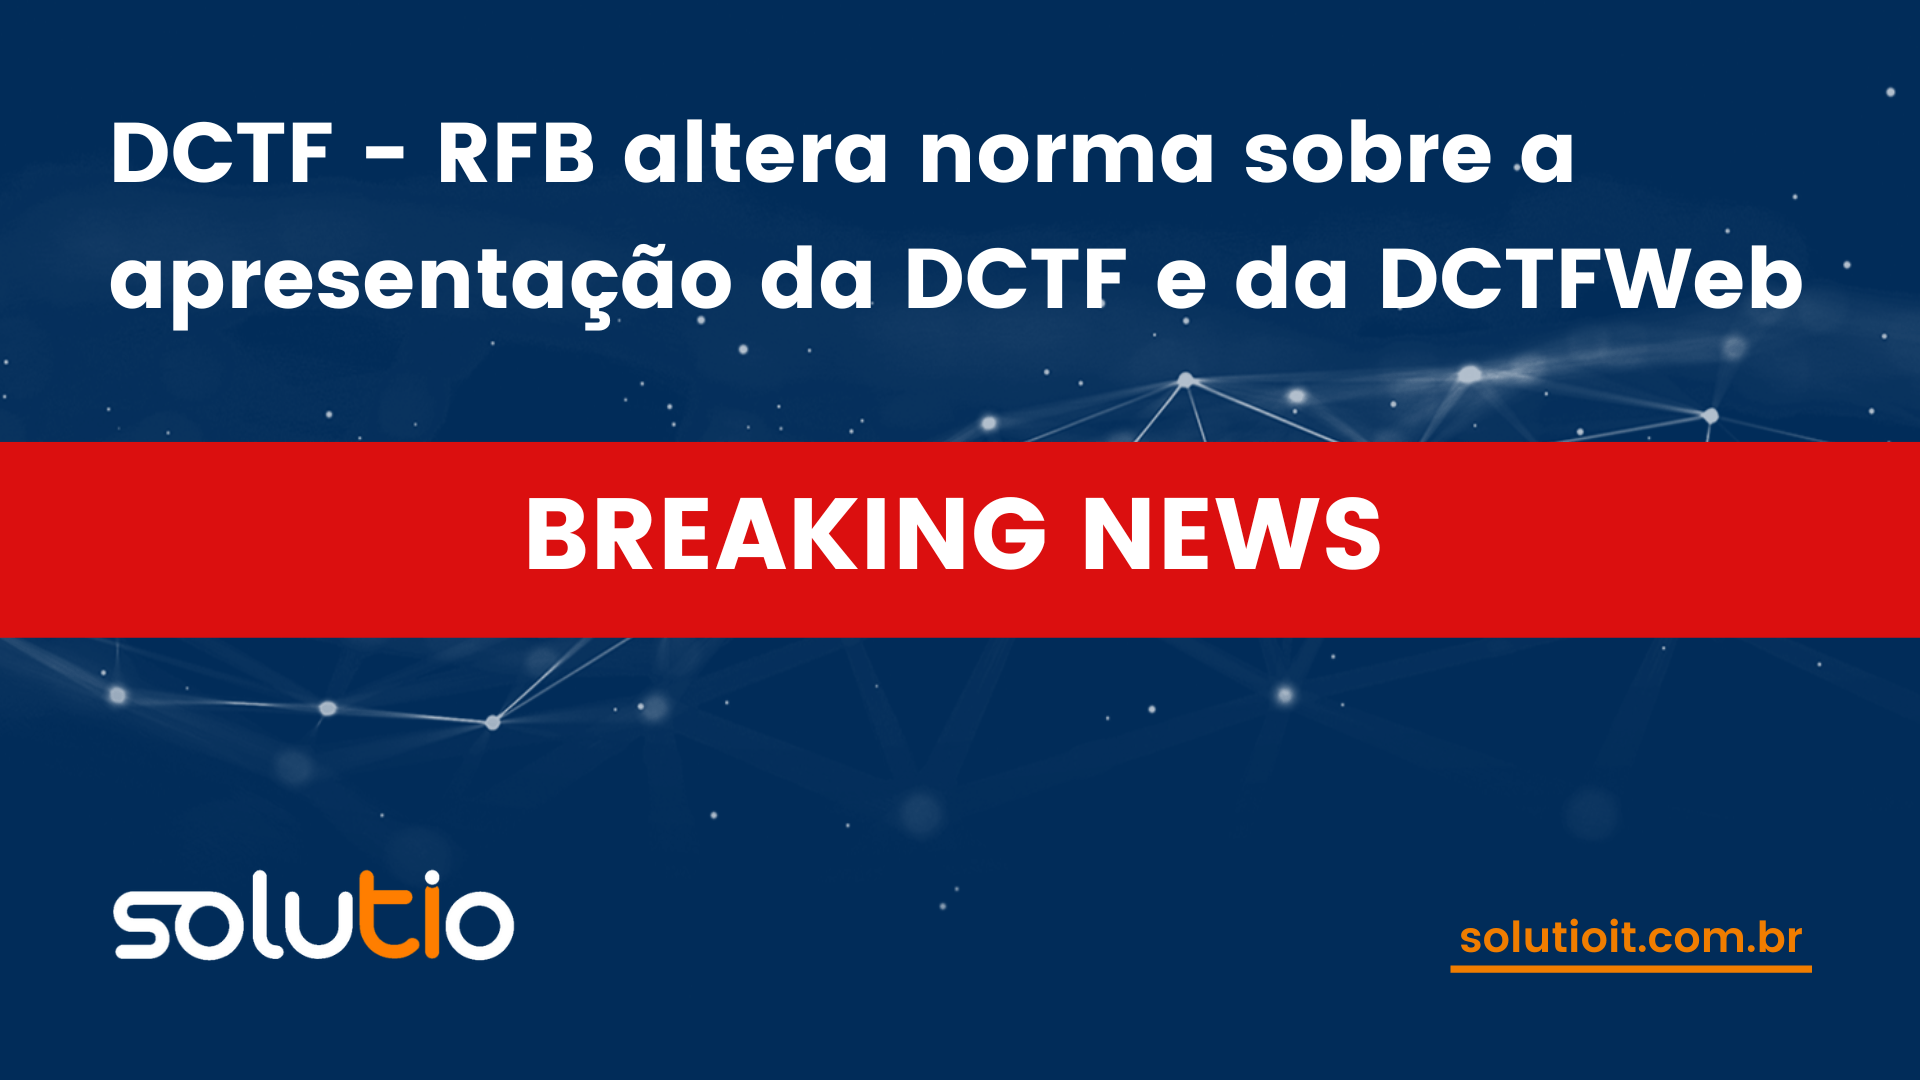 DCTF - RFB altera norma sobre a apresentação da DCTF e da DCTFWeb